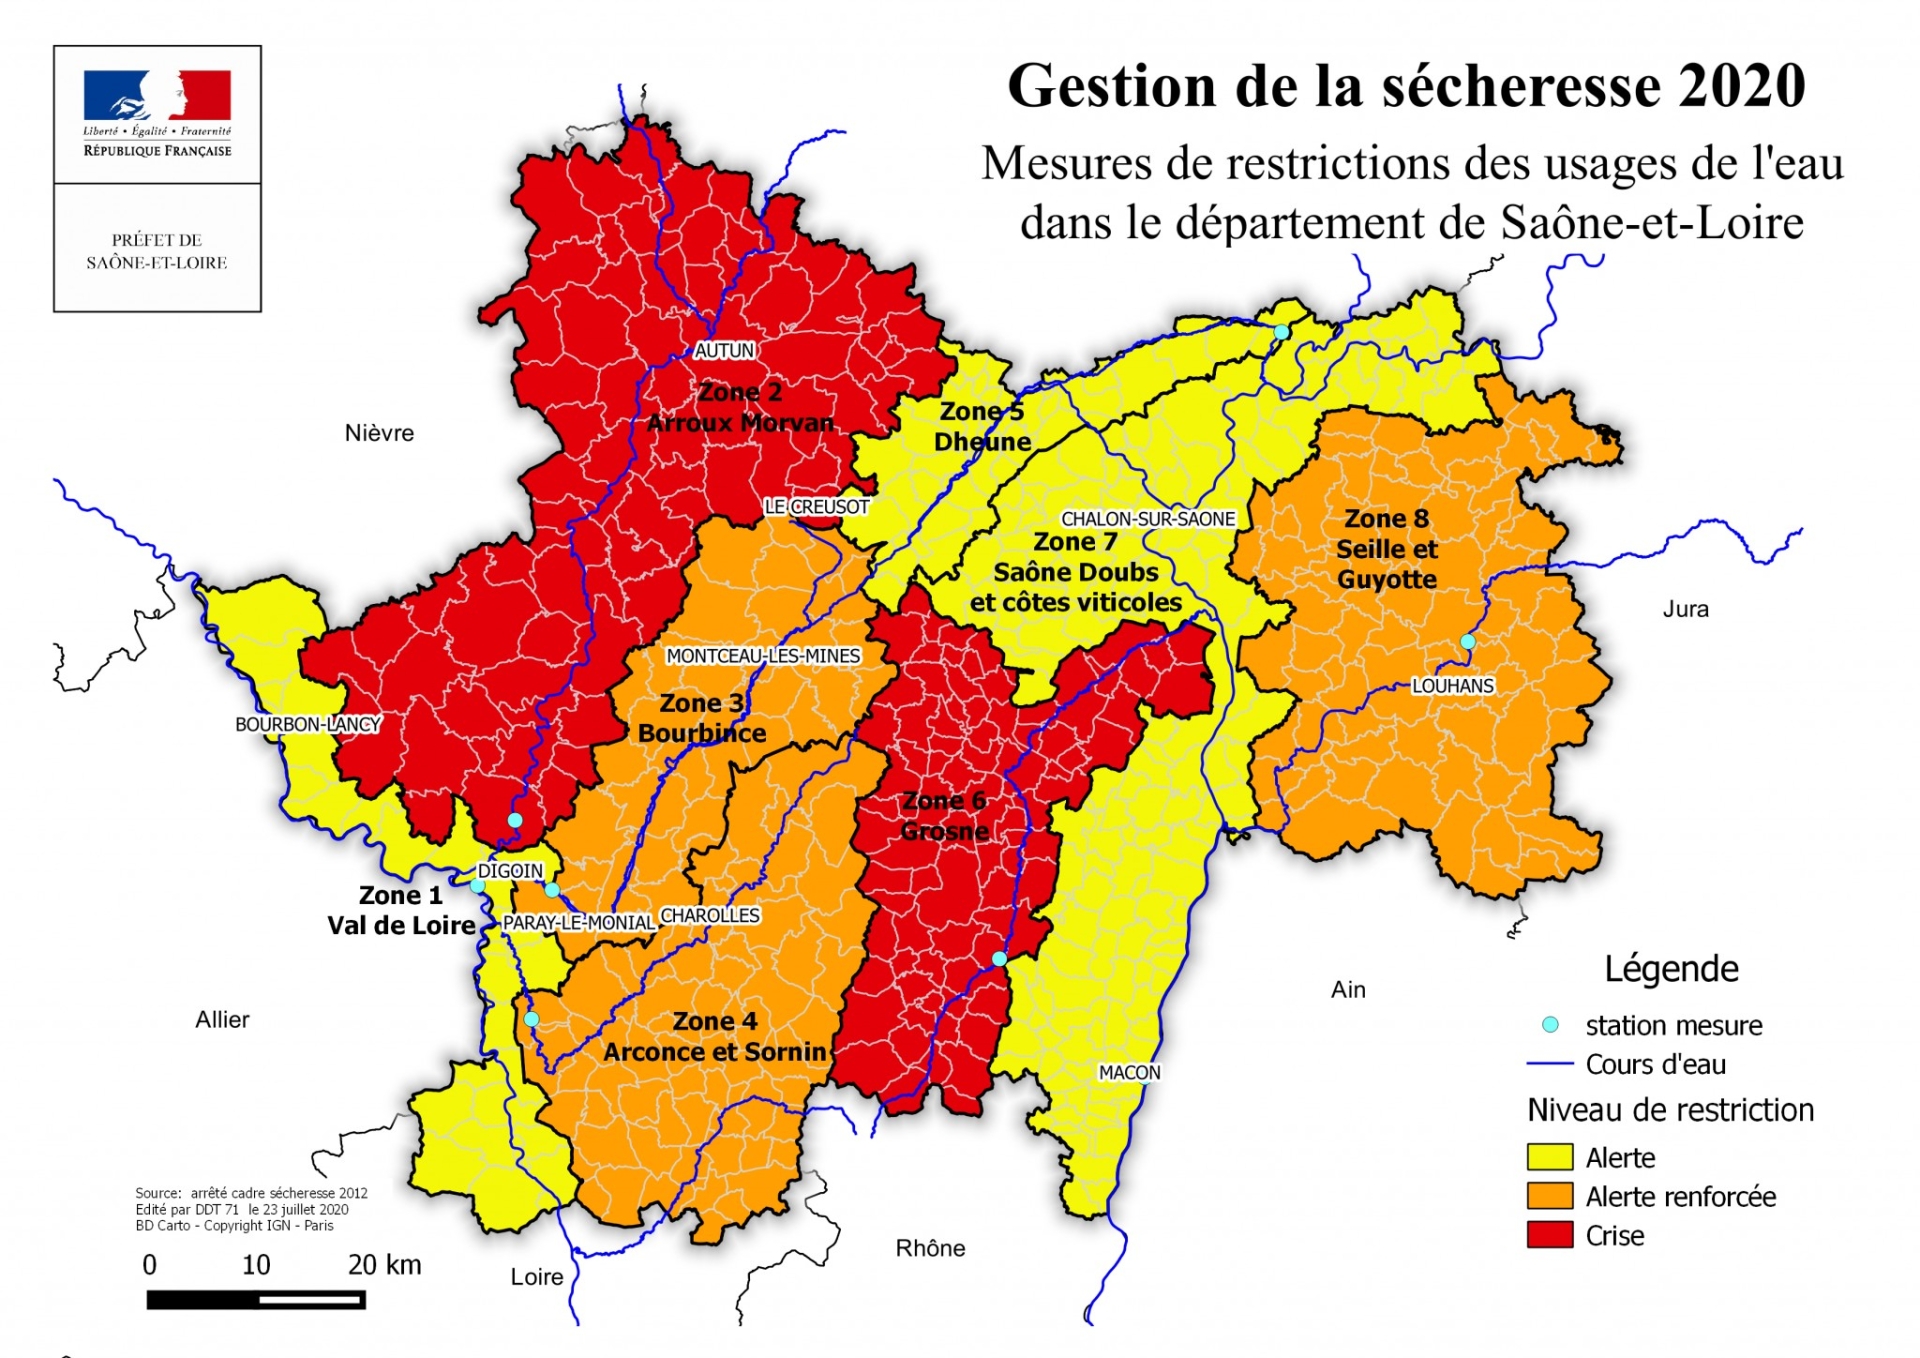 Les secteurs « Arroux-Morvan » et « Grosne » sont en crise